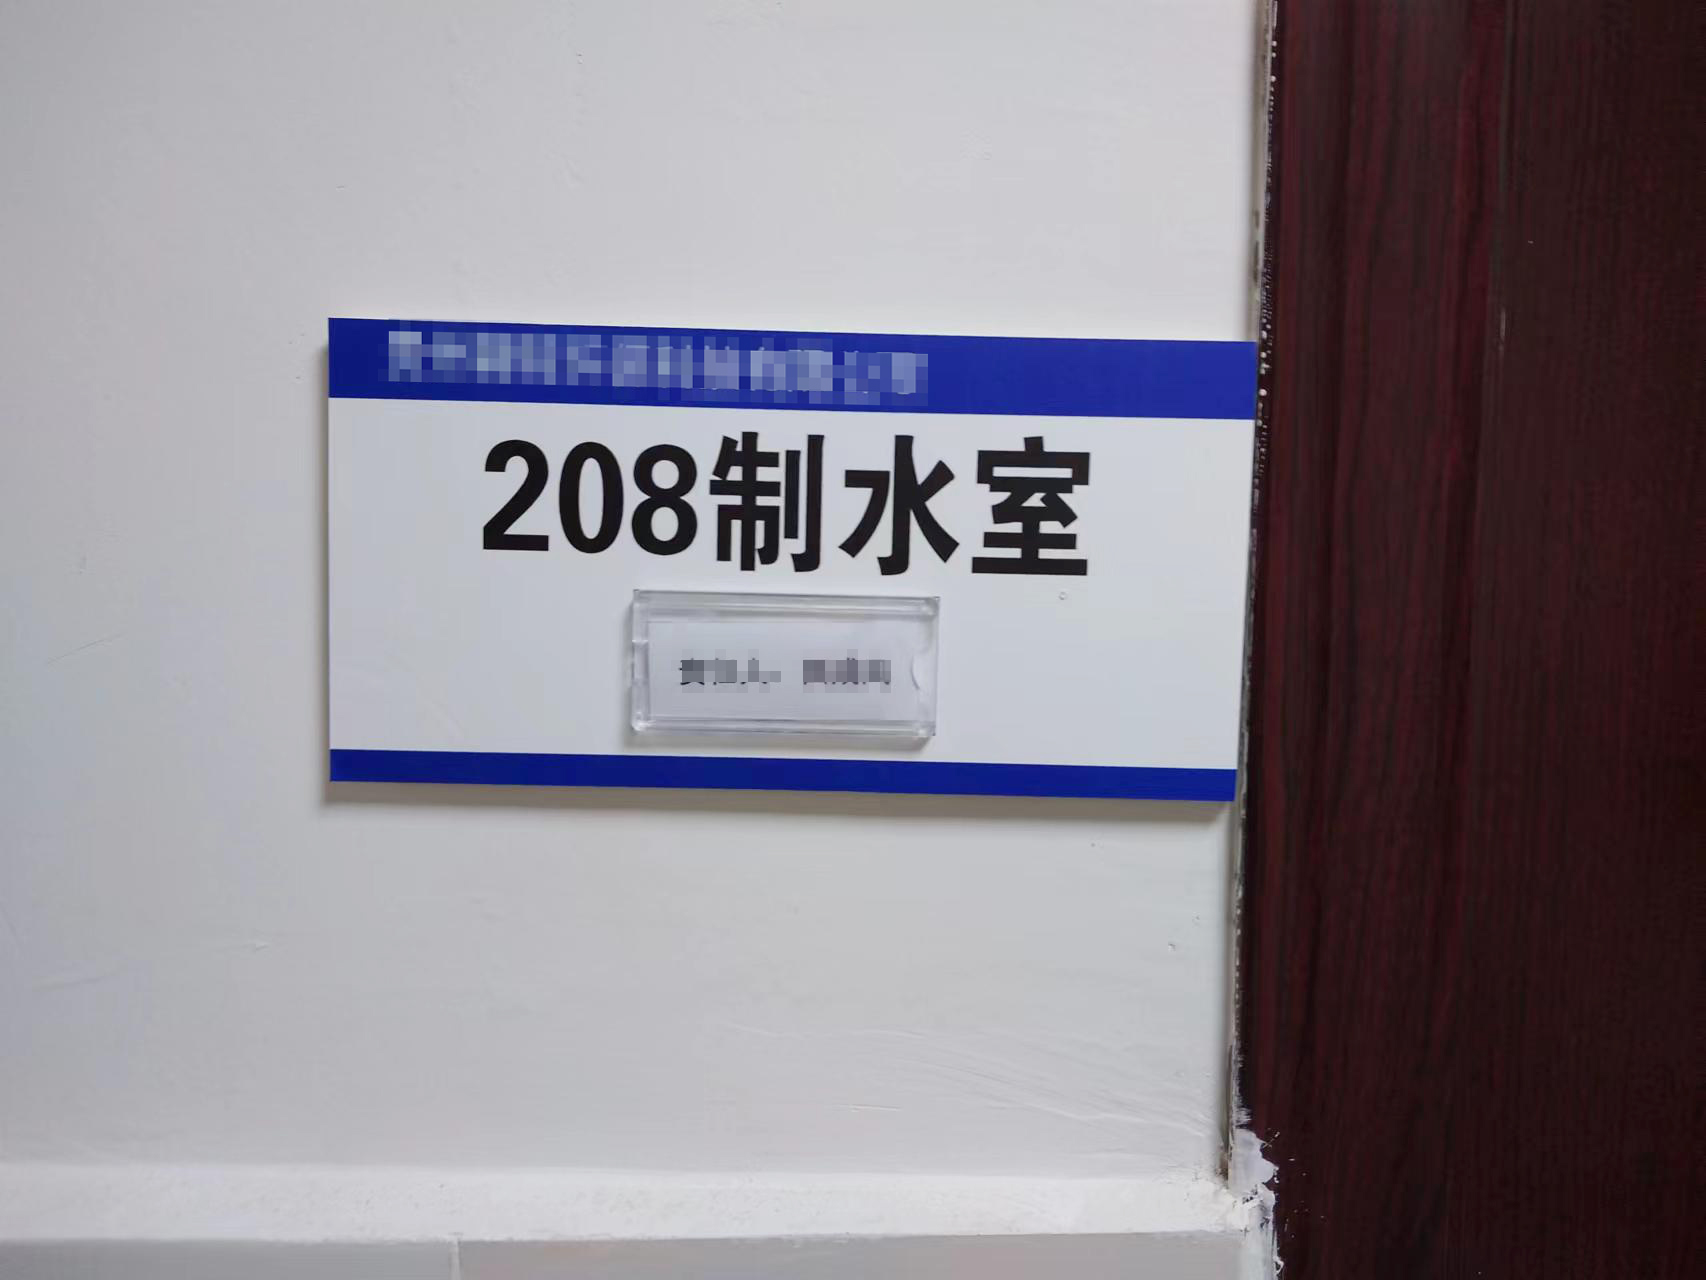 8月12日贵州某环保单位纯水机维护插图1